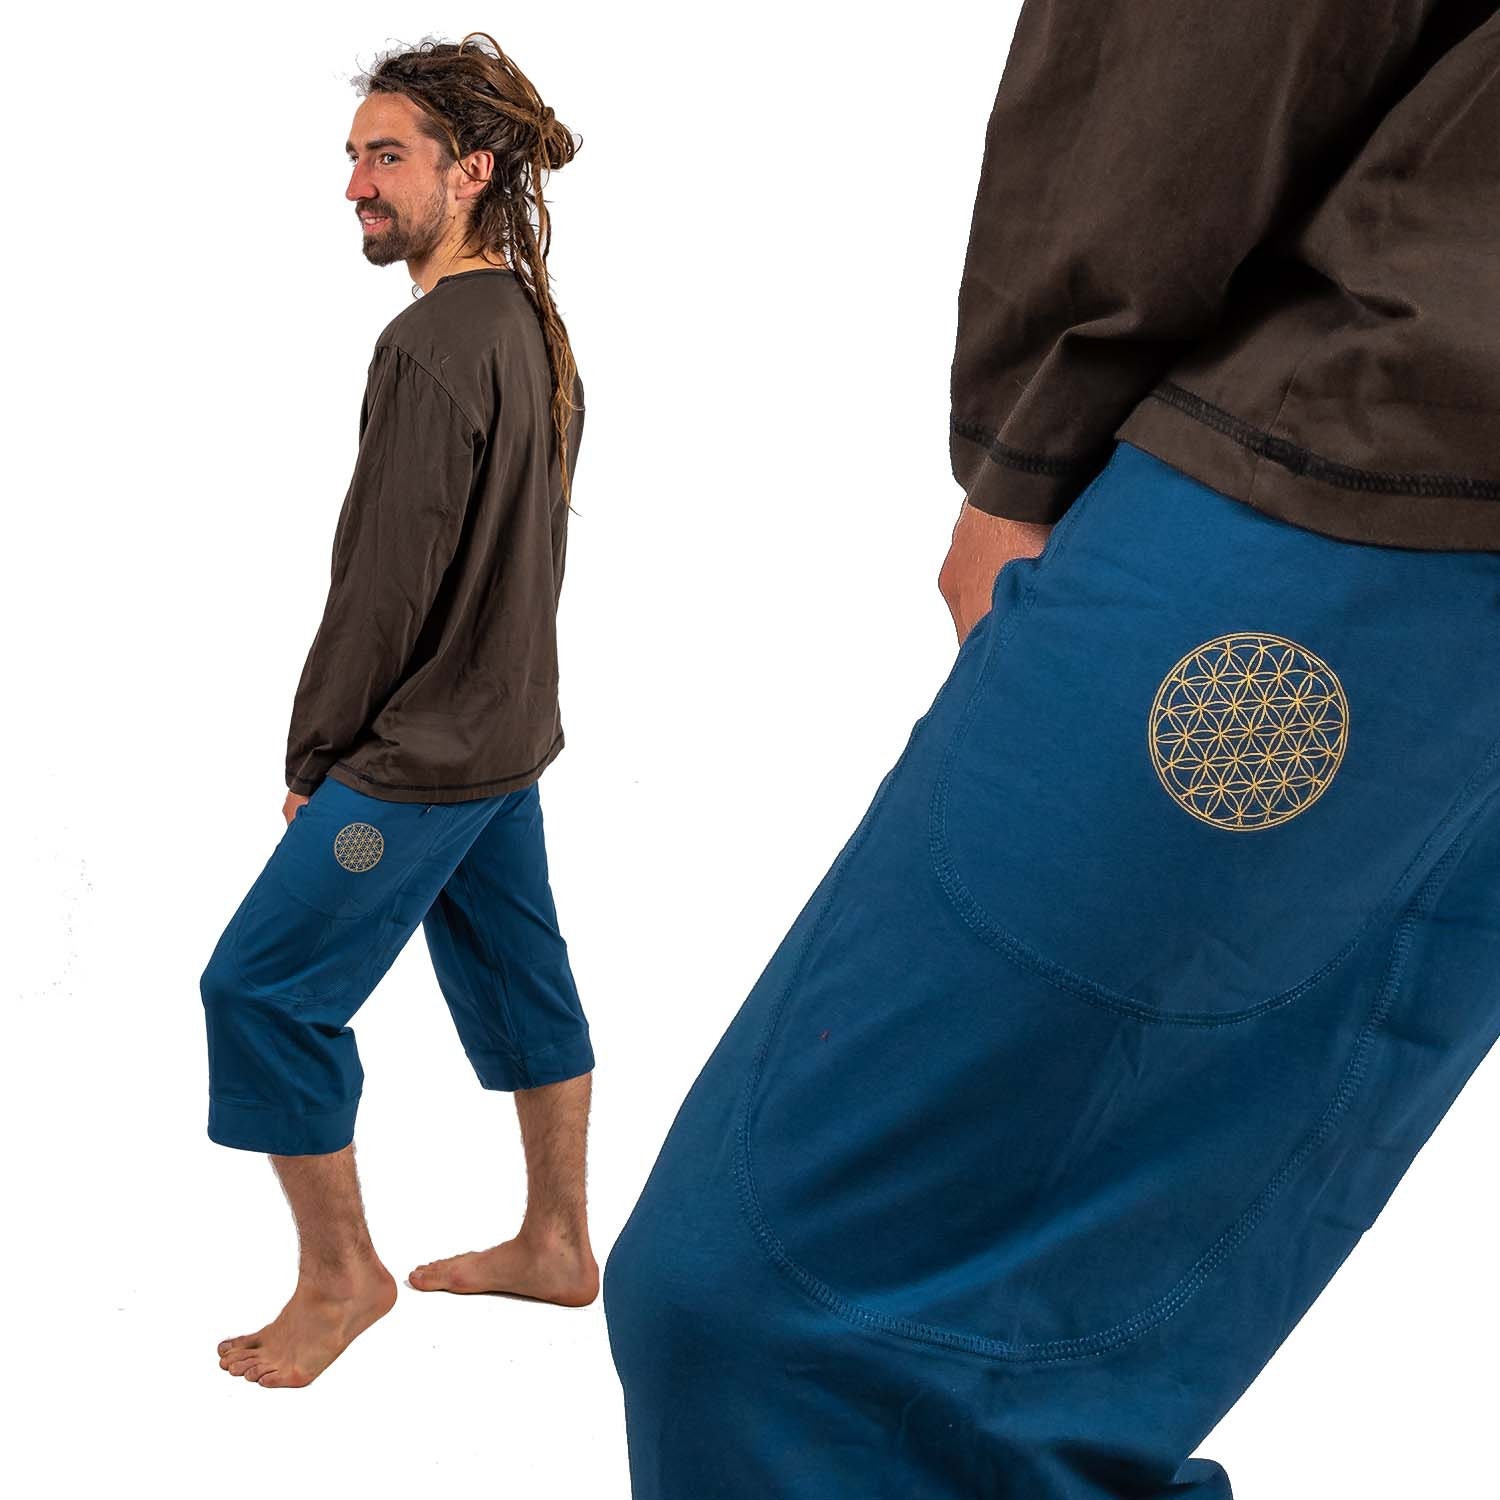 Pantalon de yoga para hombre. Tejido de calidad y agradable al tacto.  Comodos y resistentes a las exigencias del entrenamiento. Unisex -   México